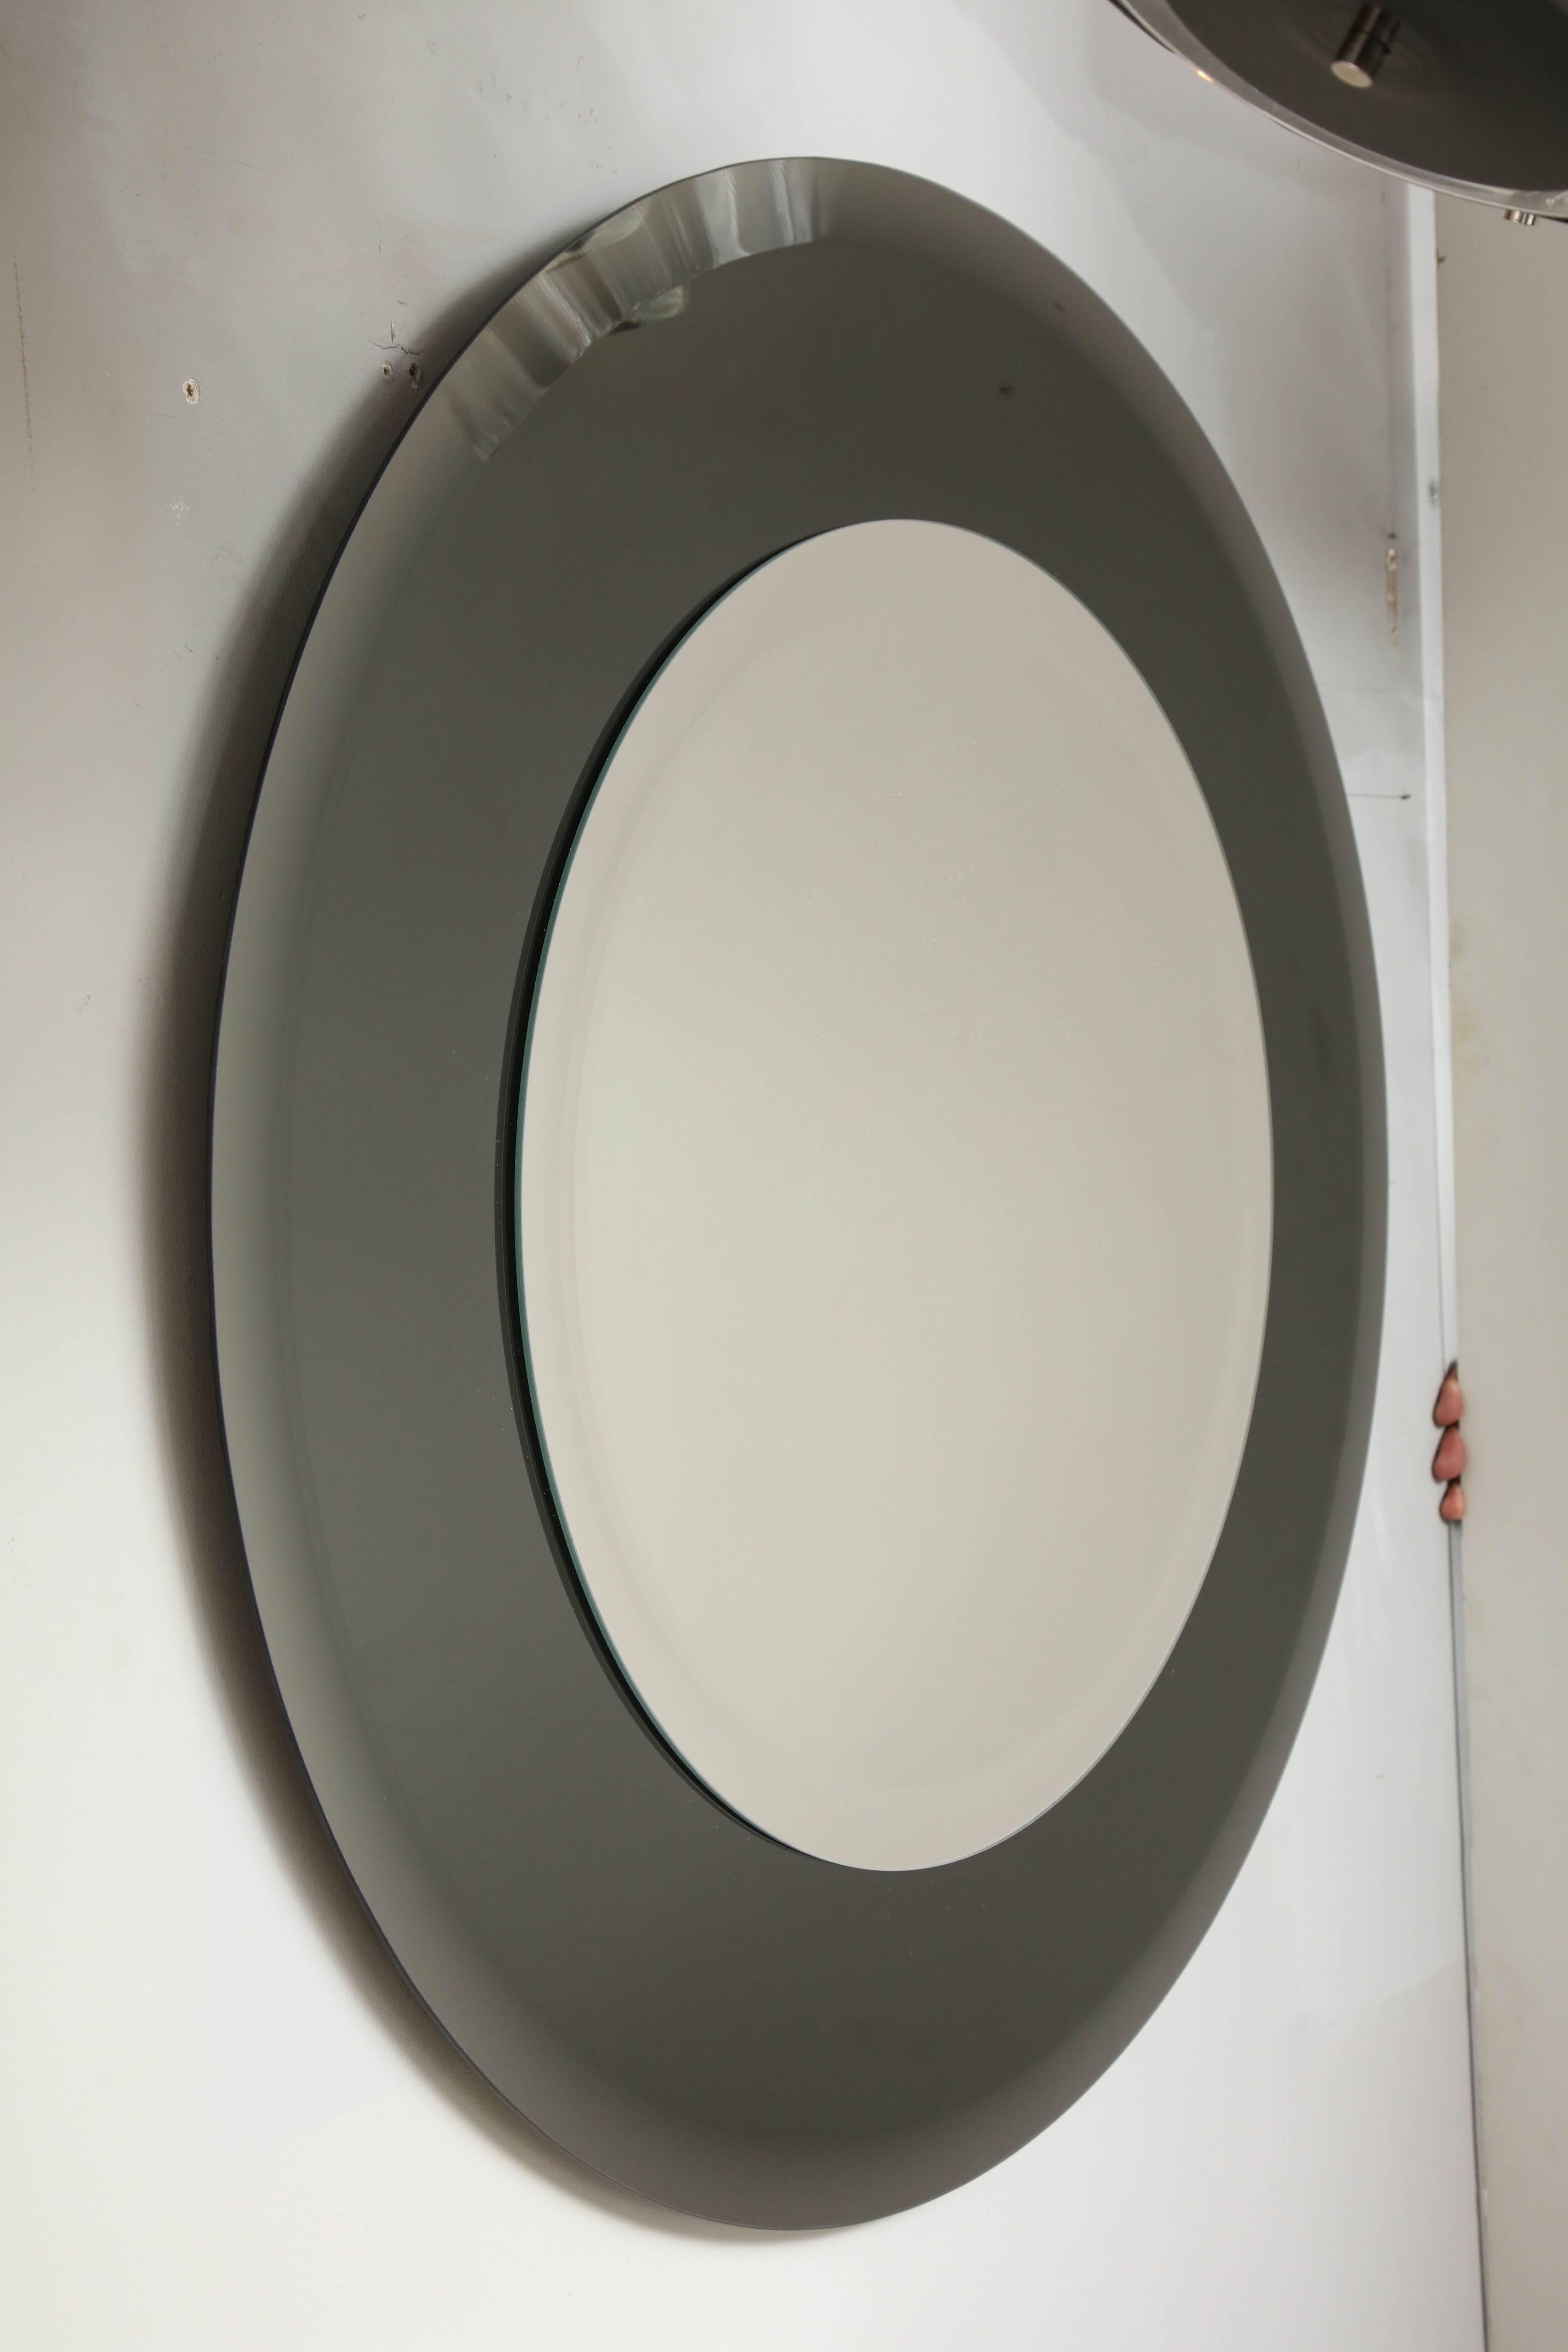 Miroir rond à bord biseauté sur mesure avec bordure en verre fumé. Le miroir au centre fait 22